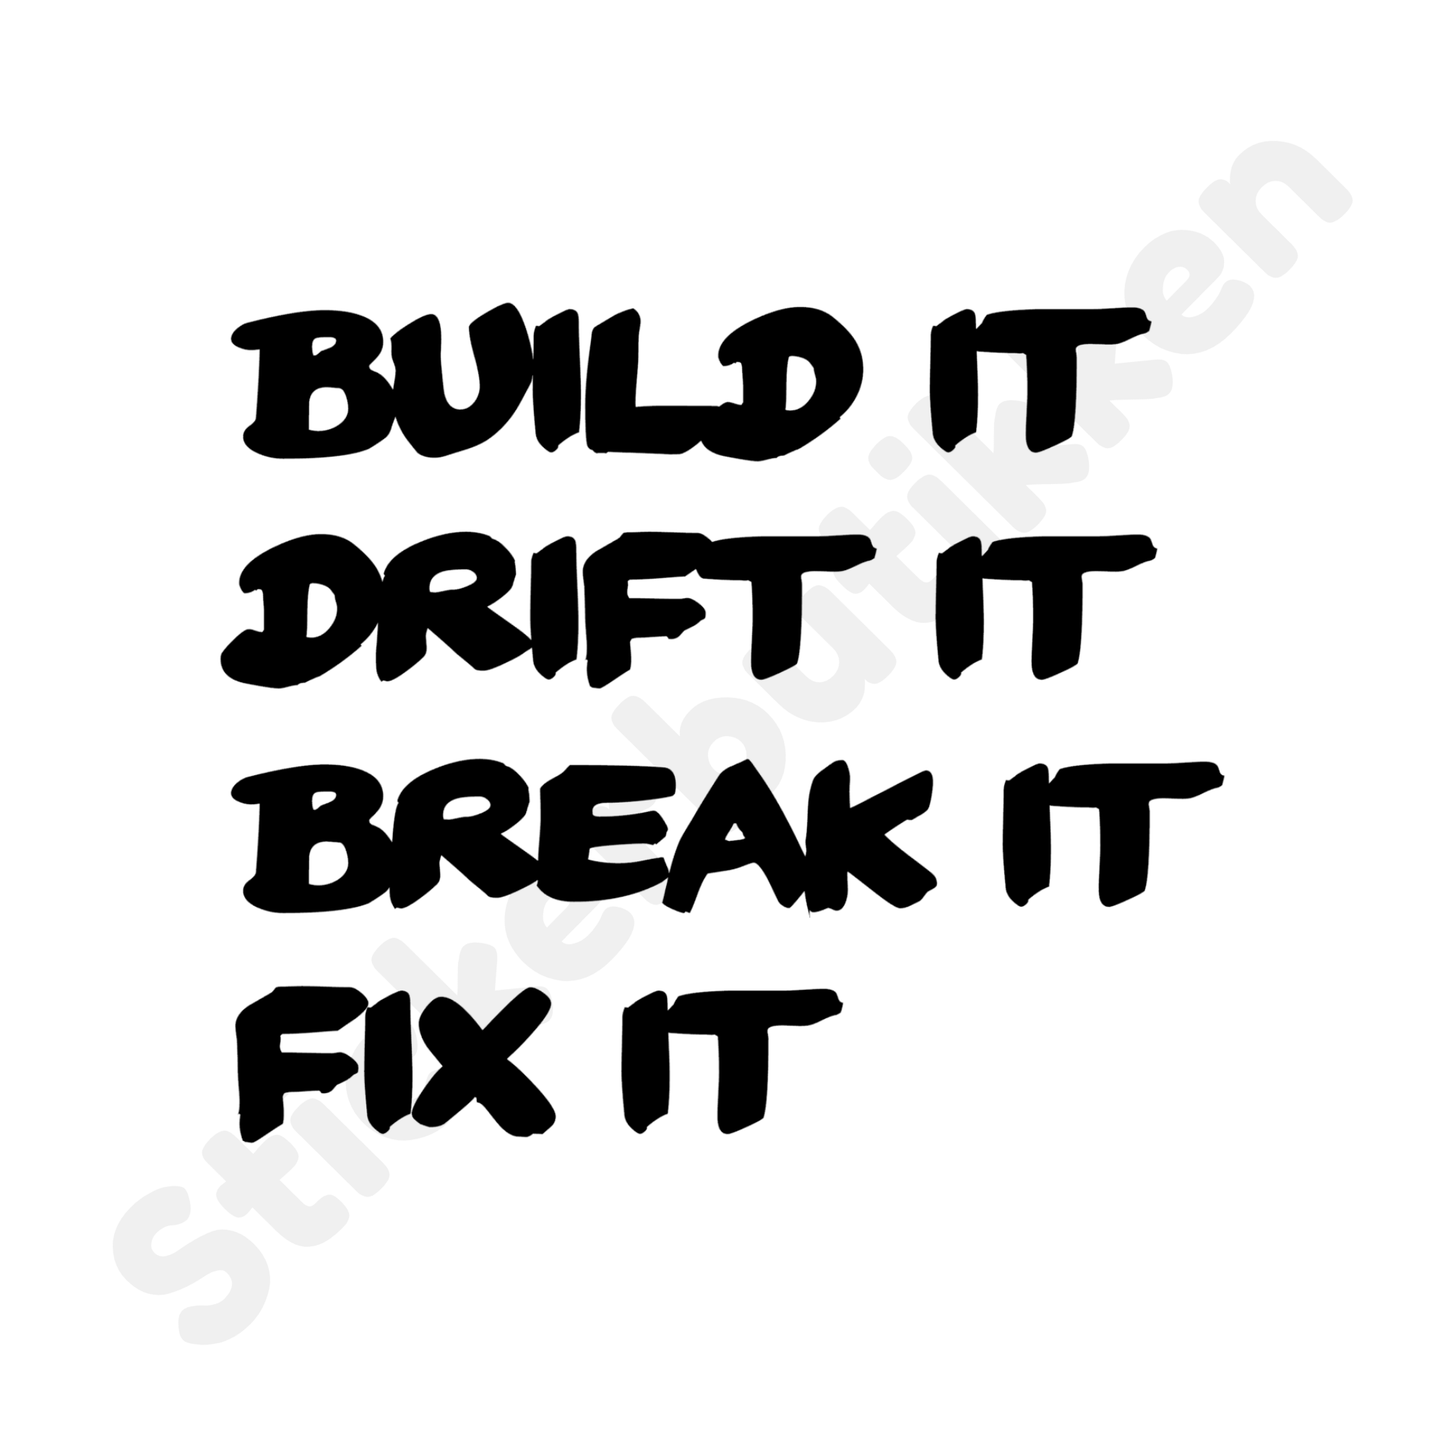 Build it Drift it Break it Fix it